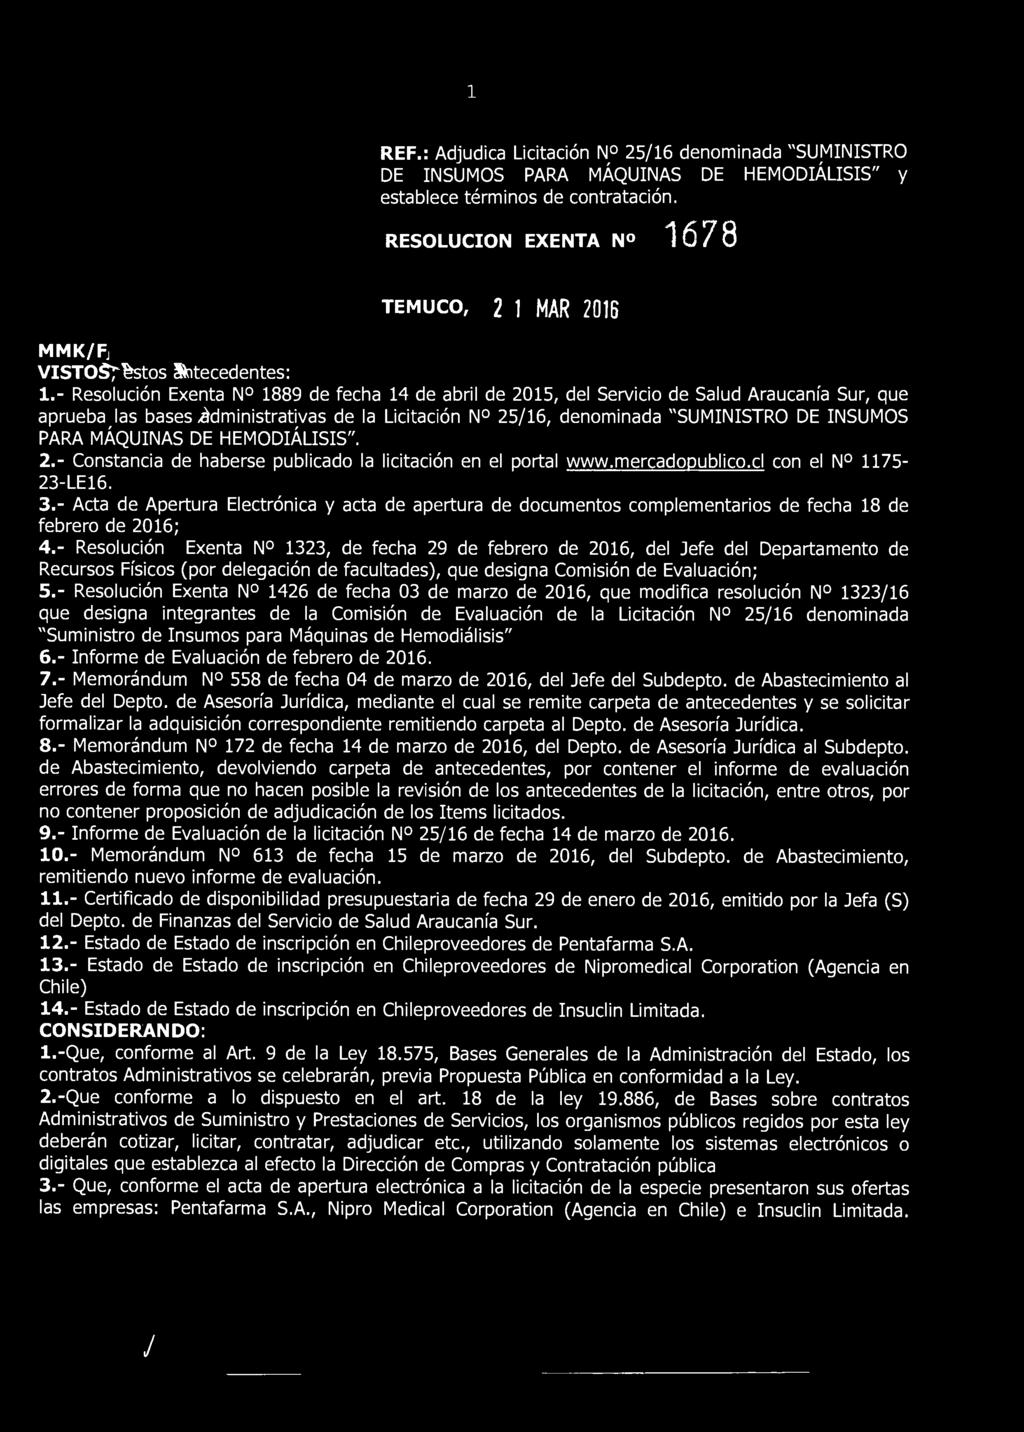 REF.: Adjudica Licitación N 25/16 denominada "SUMINISTRO DE INSUMOS PARA MÁQUINAS DE HEMODIÁLISIS" y establece términos de contratación.